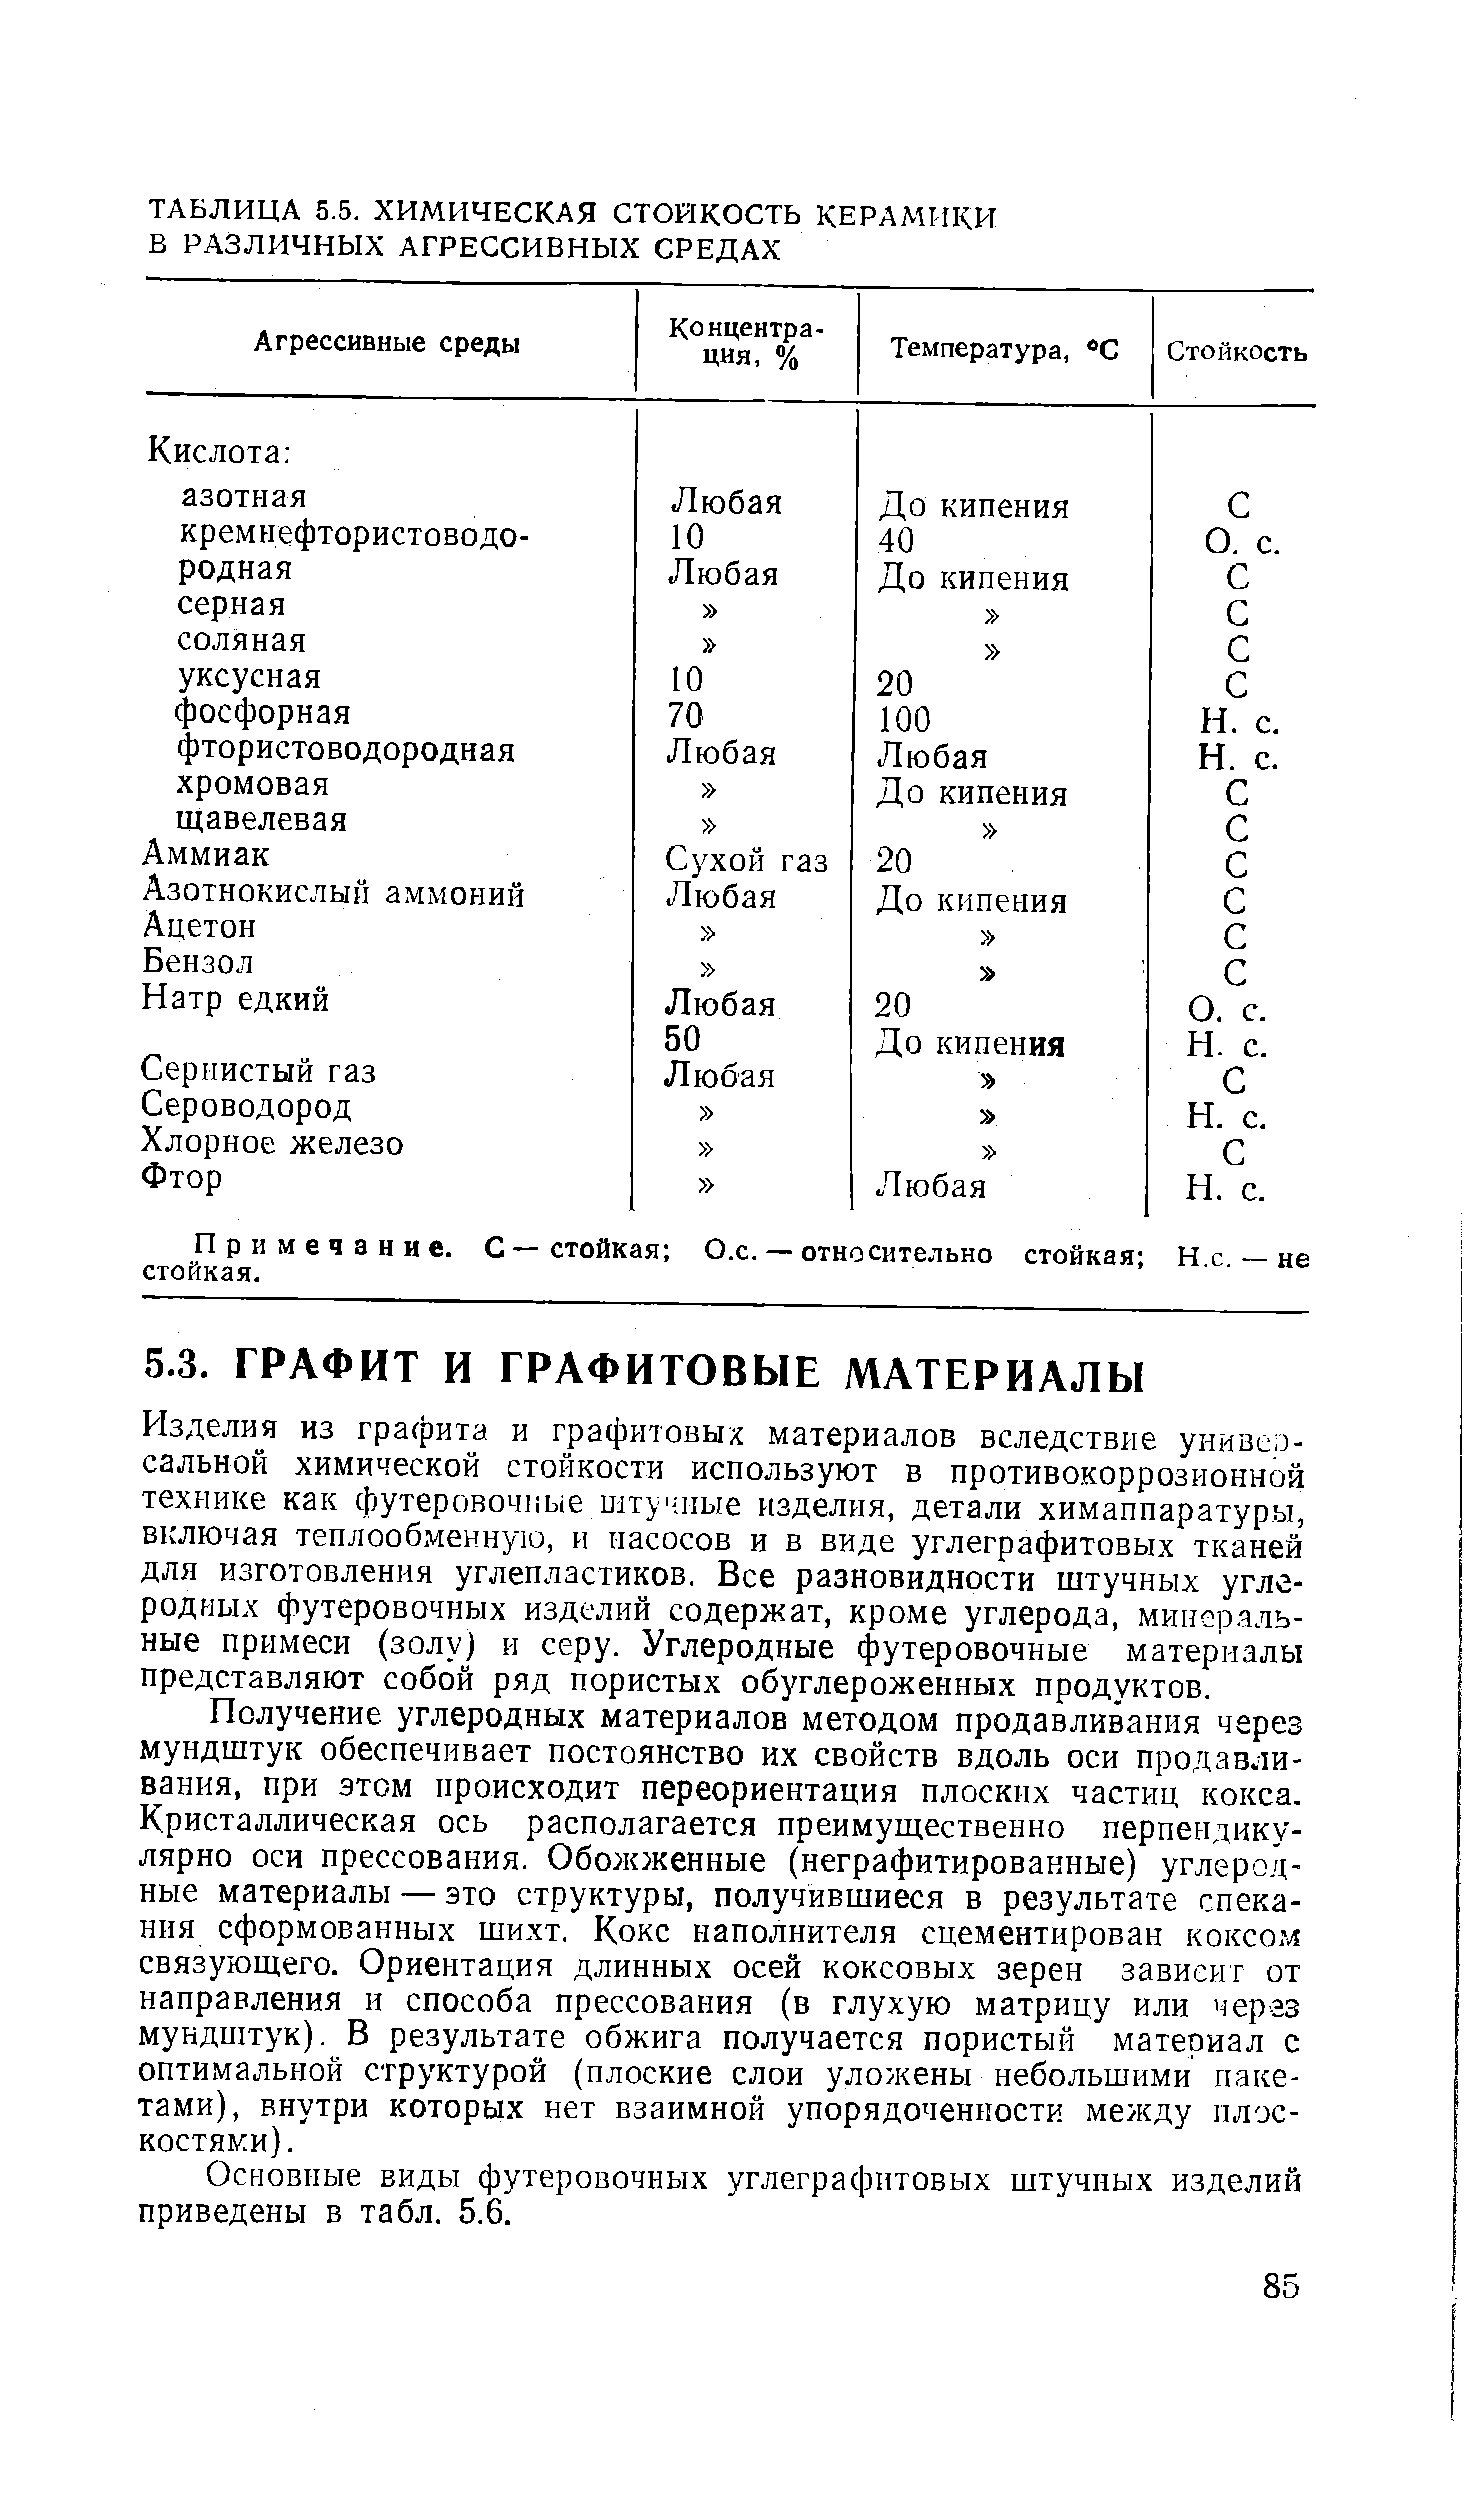 Основные виды футеровочных углеграфитовых штучных изделий приведены в табл. 5.6.
